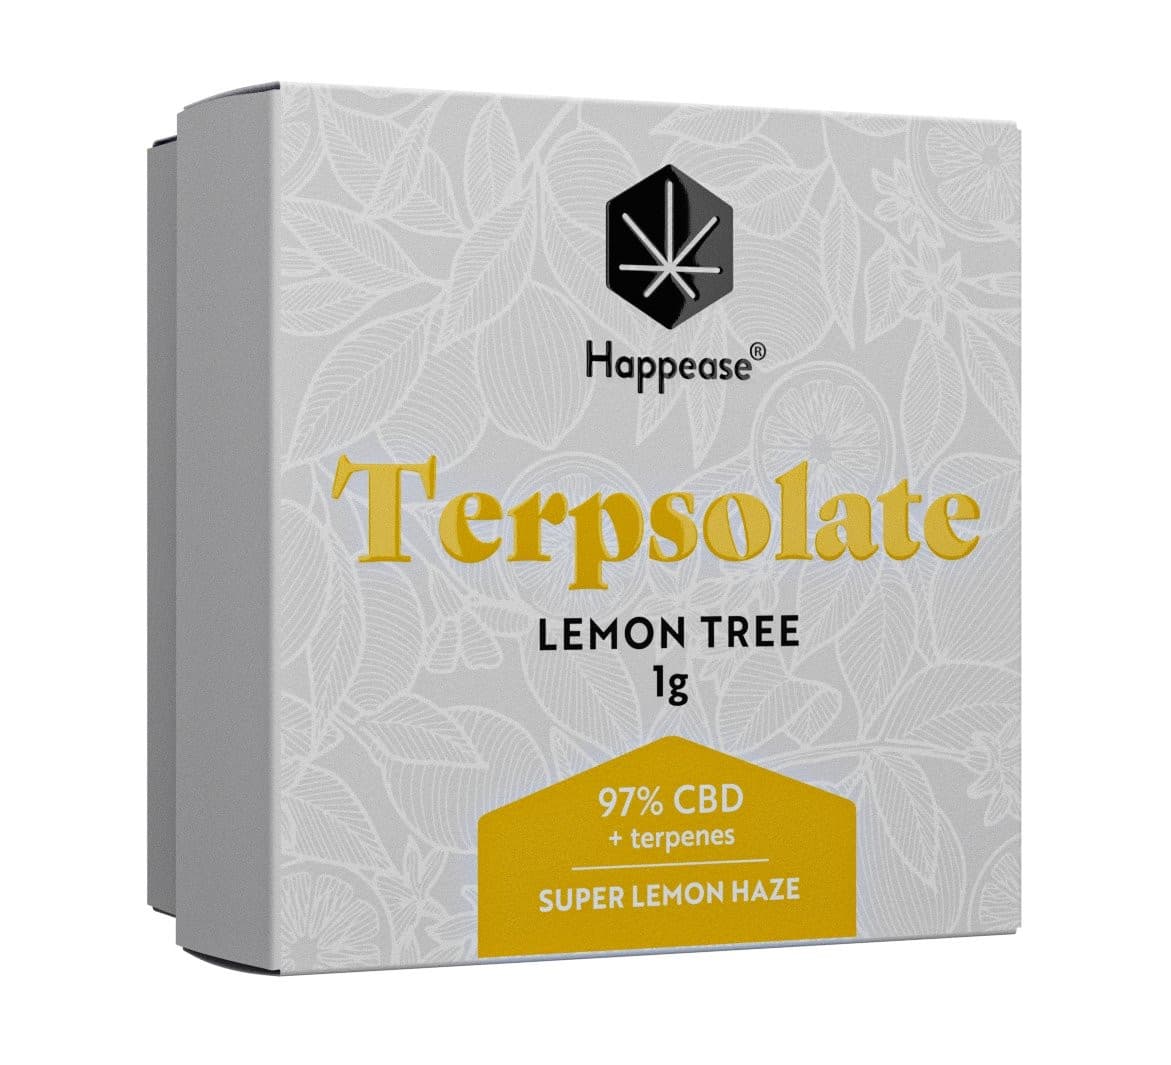 Terpsolate Happease Lemon Tree 97% CBD Extract - Green Kartel : Votre boutique CBD spécialisée en fleur et résine CBD